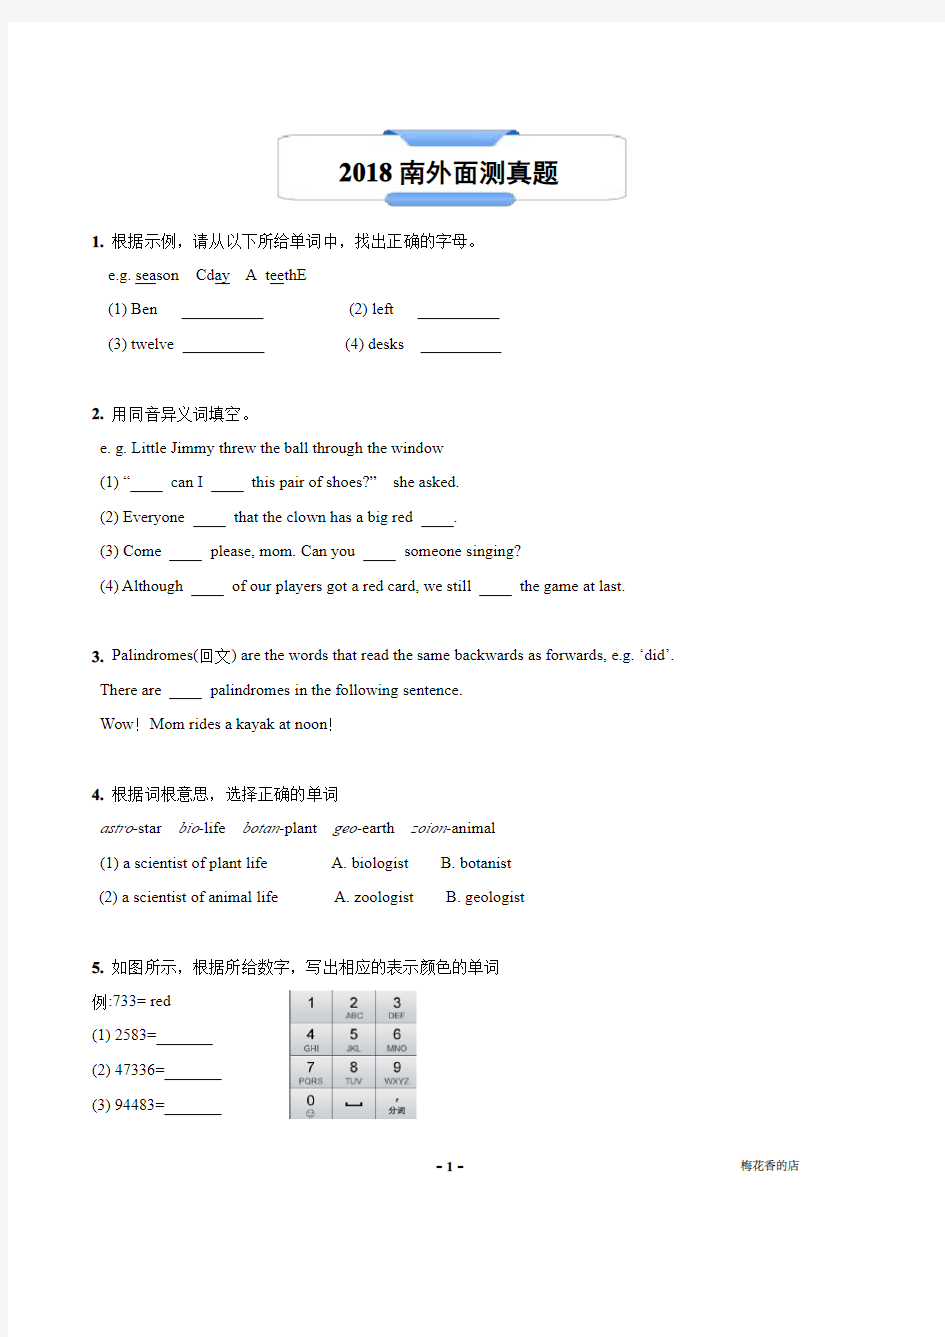 南京外国语学校2018年英语综合能力测试试卷解析